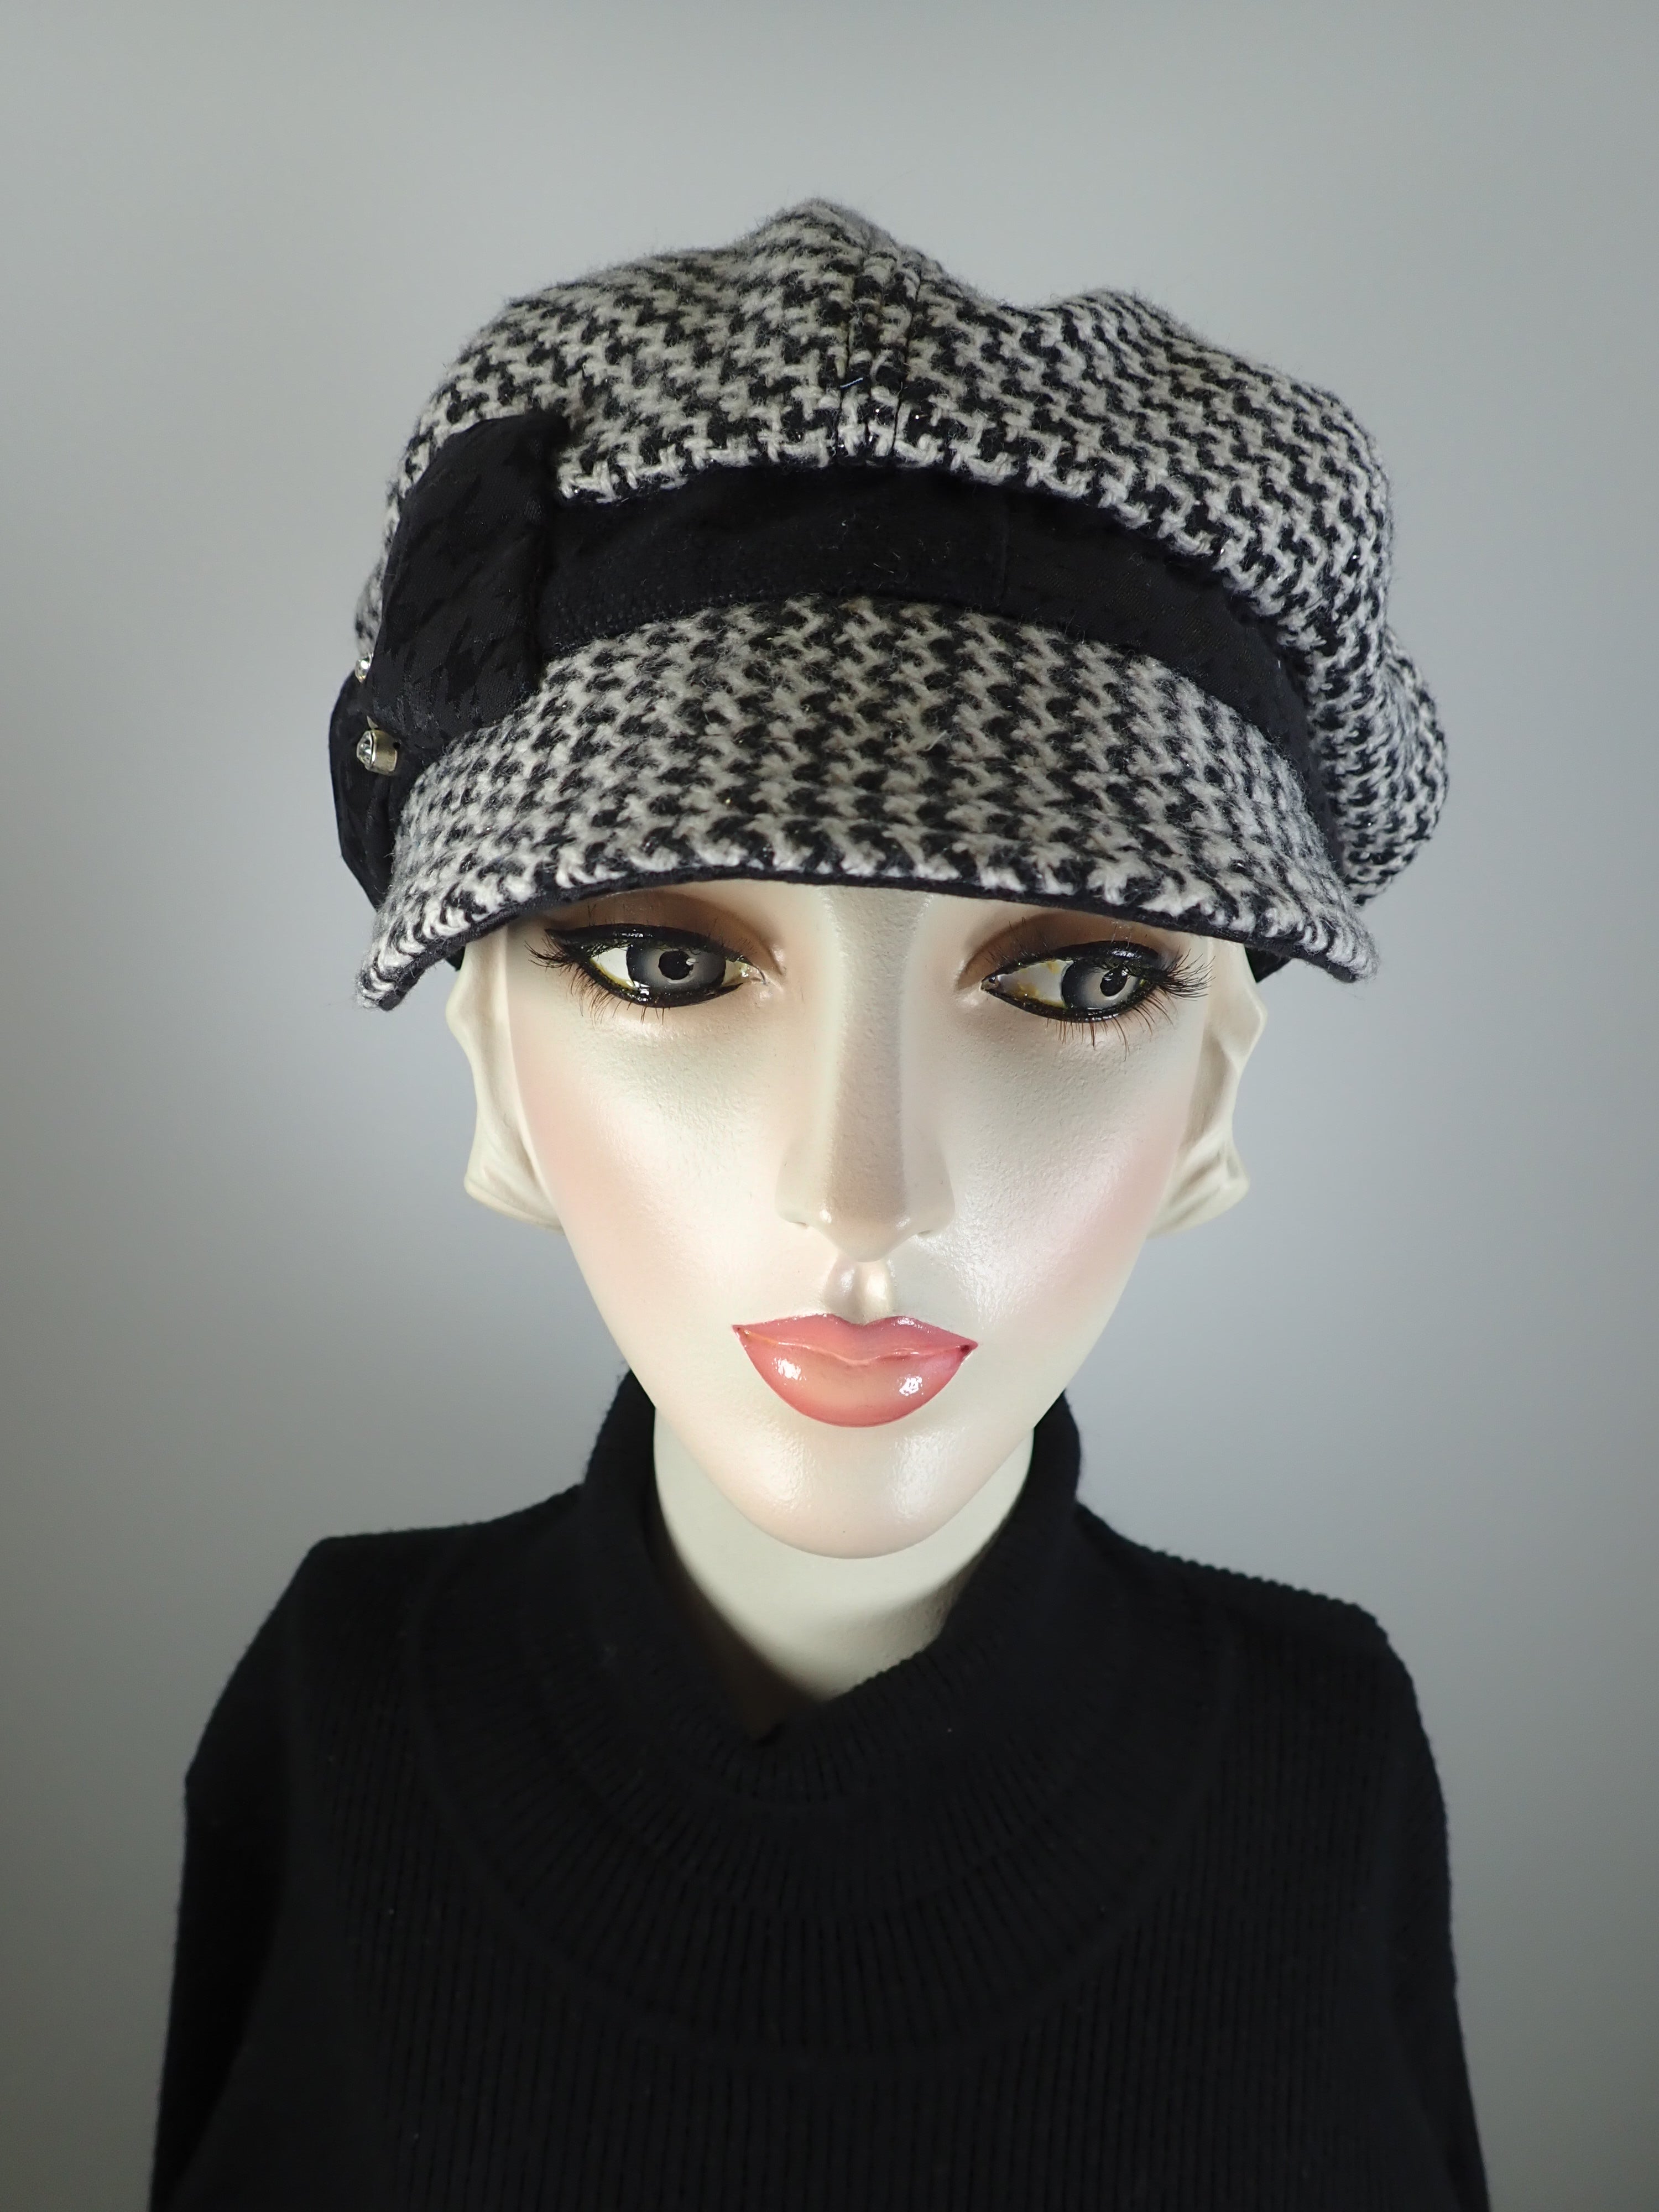 Womens Black White Hat. Soft Newsboy Hat. Slouchy Newsboy Cap. Ladies Warm Winter Hat. Wool textured fashion hat. Neutral hat.